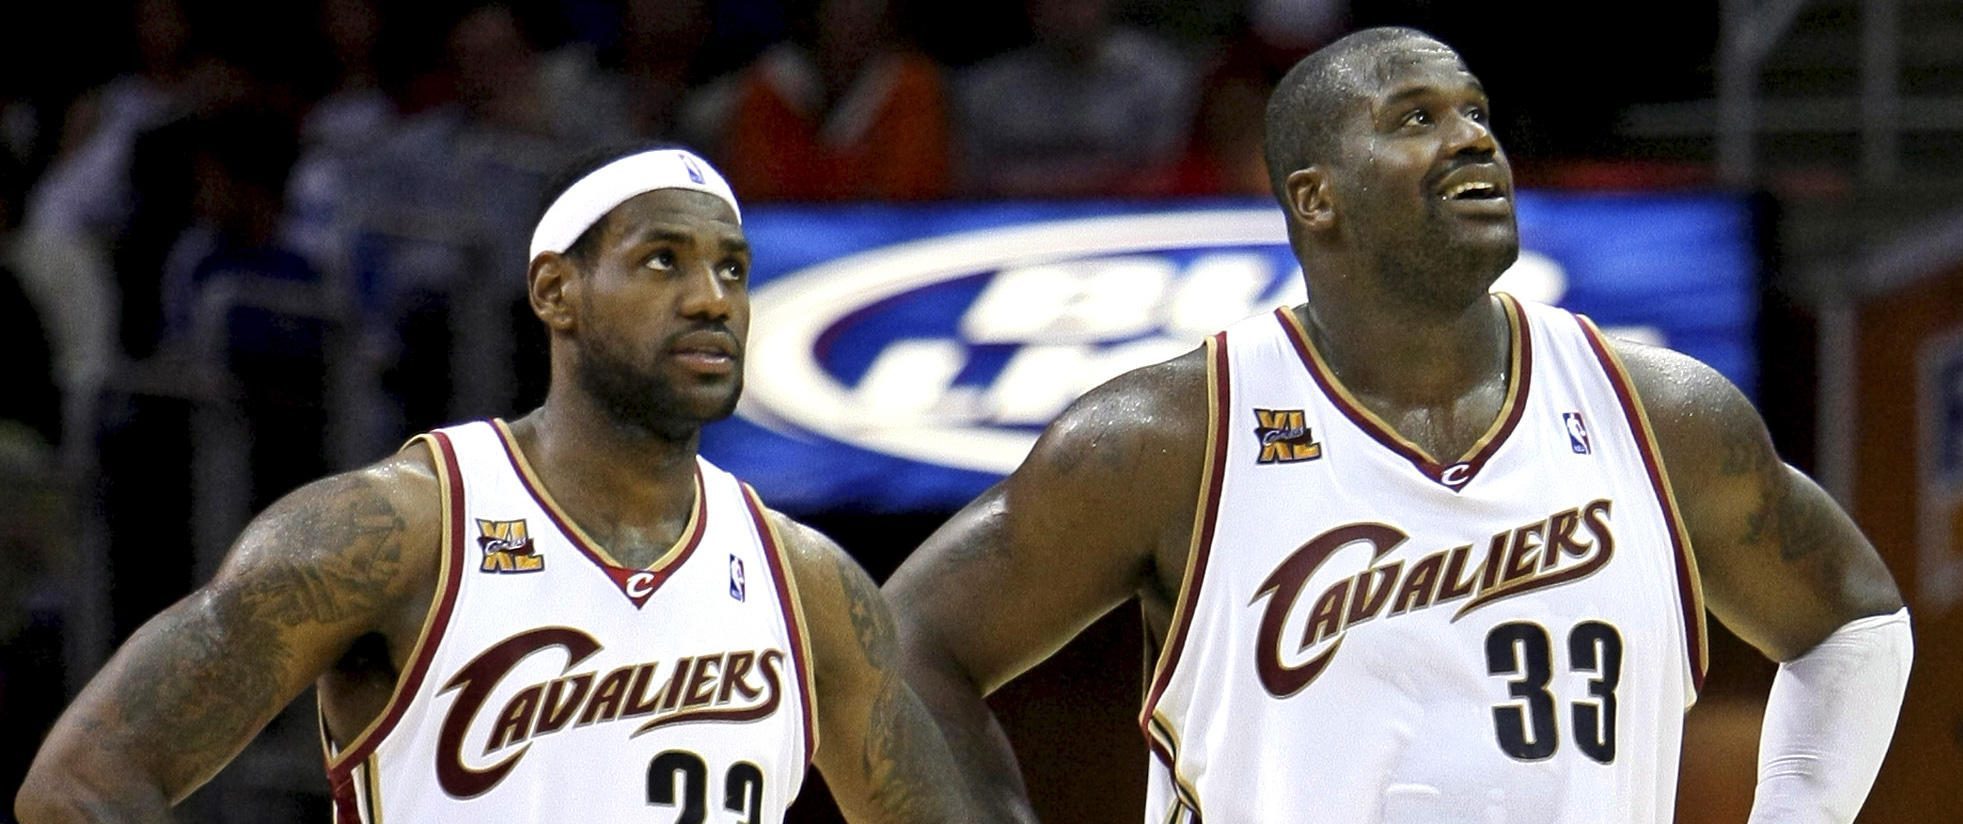 LeBron James et Shaquille O'Neal sous le maillot des Cavaliers.